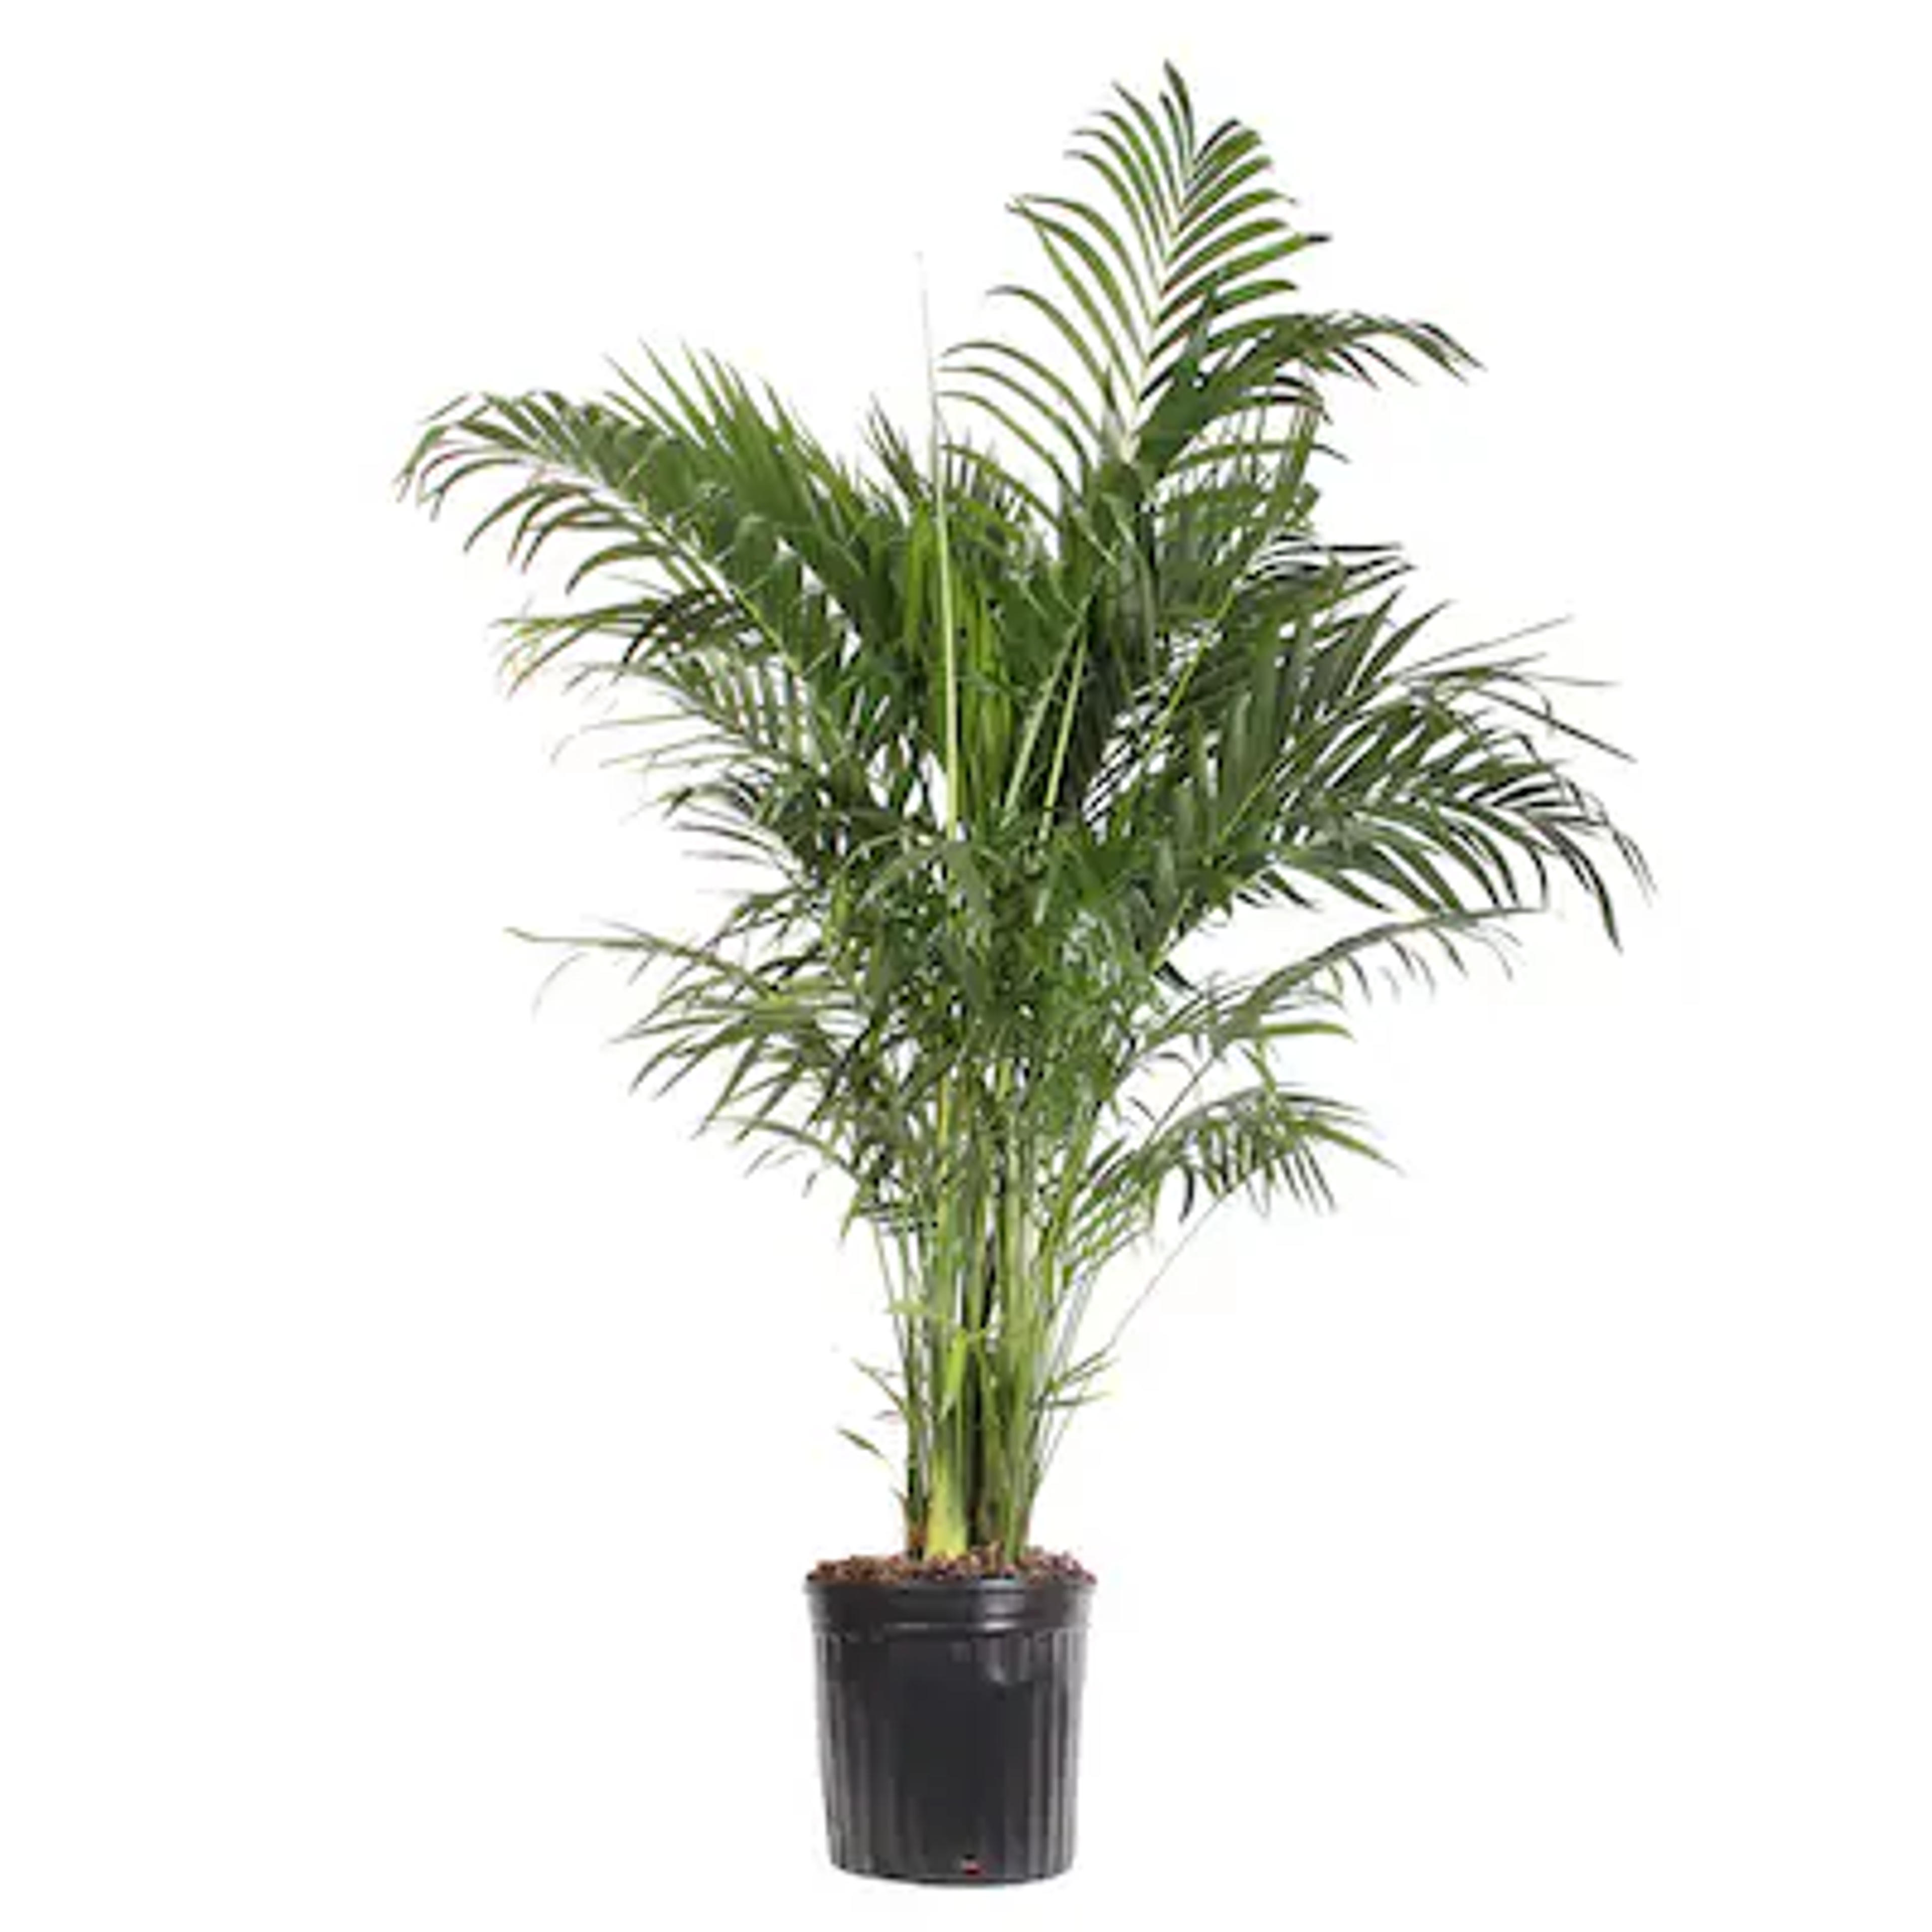 Palm House Plant Lowes.com